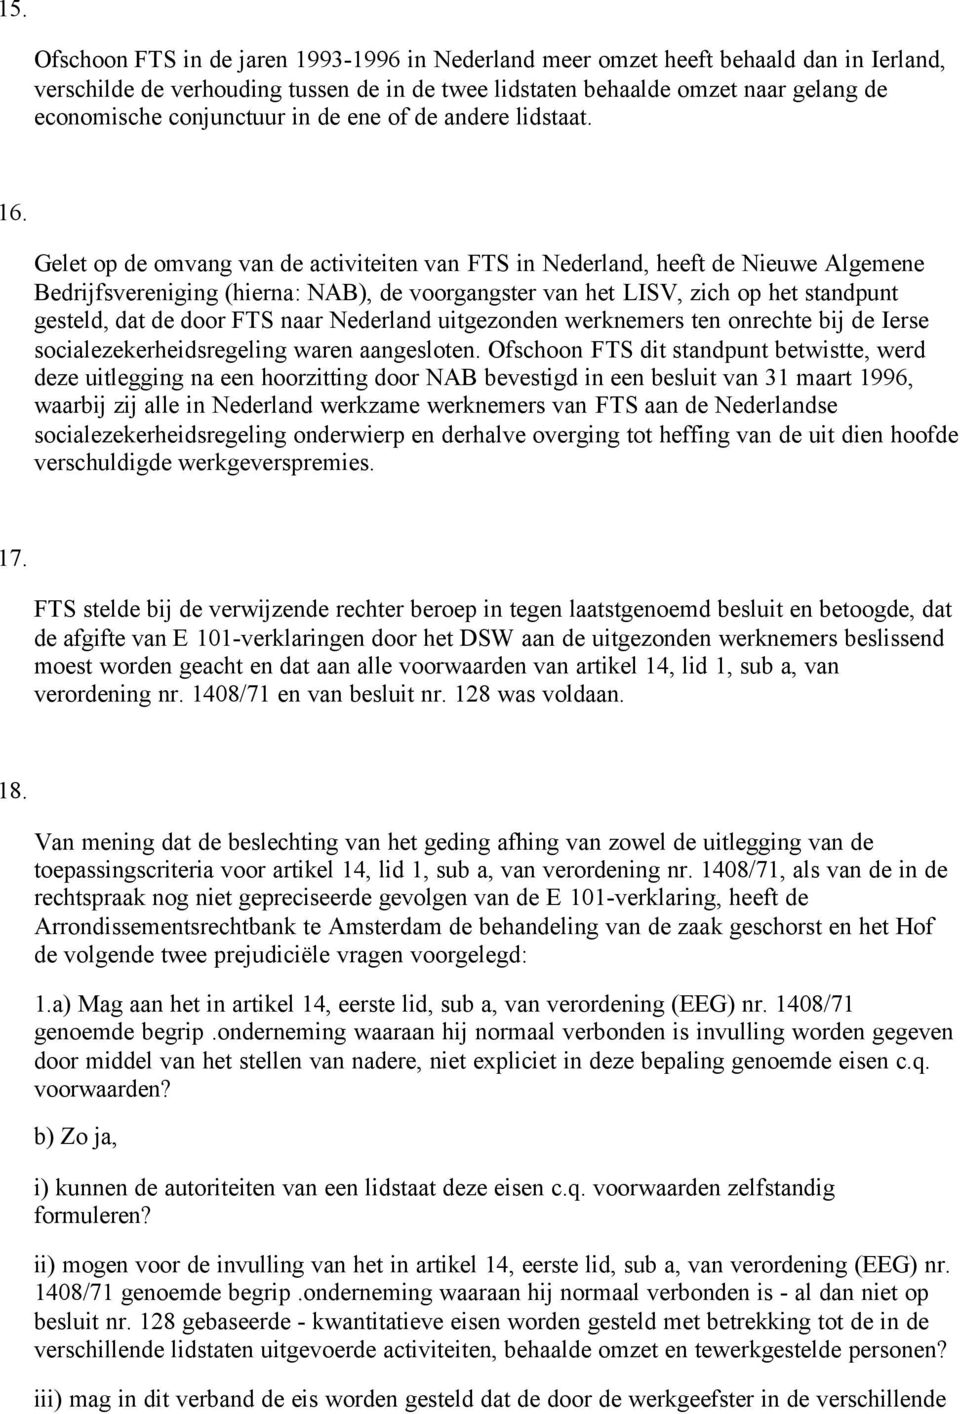 Gelet op de omvang van de activiteiten van FTS in Nederland, heeft de Nieuwe Algemene Bedrijfsvereniging (hierna: NAB), de voorgangster van het LISV, zich op het standpunt gesteld, dat de door FTS